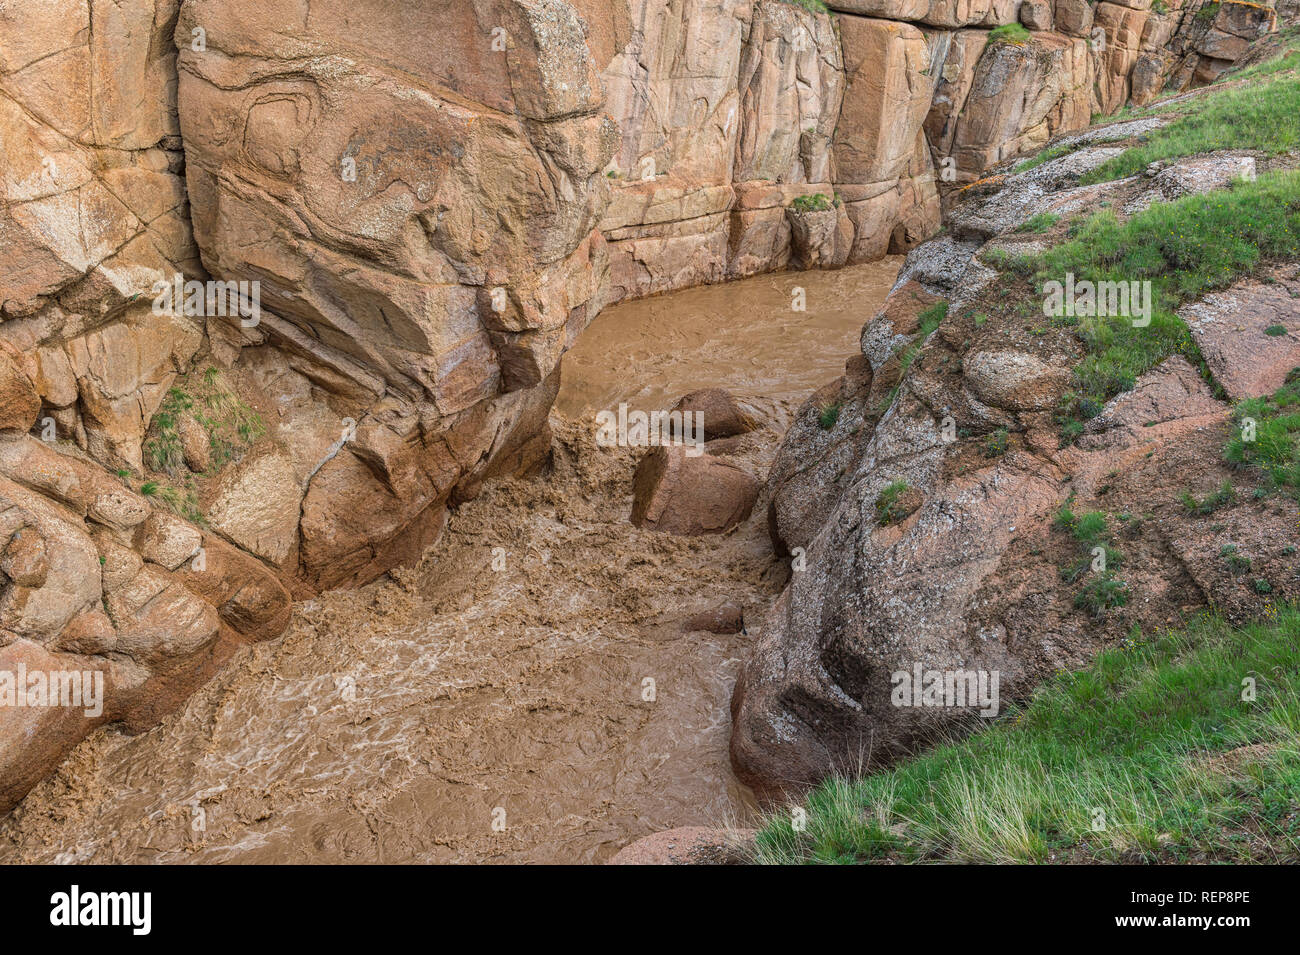 Rivière de montagne boueuse en passant par un canyon étroit, province de Naryn, Kirghizistan Banque D'Images